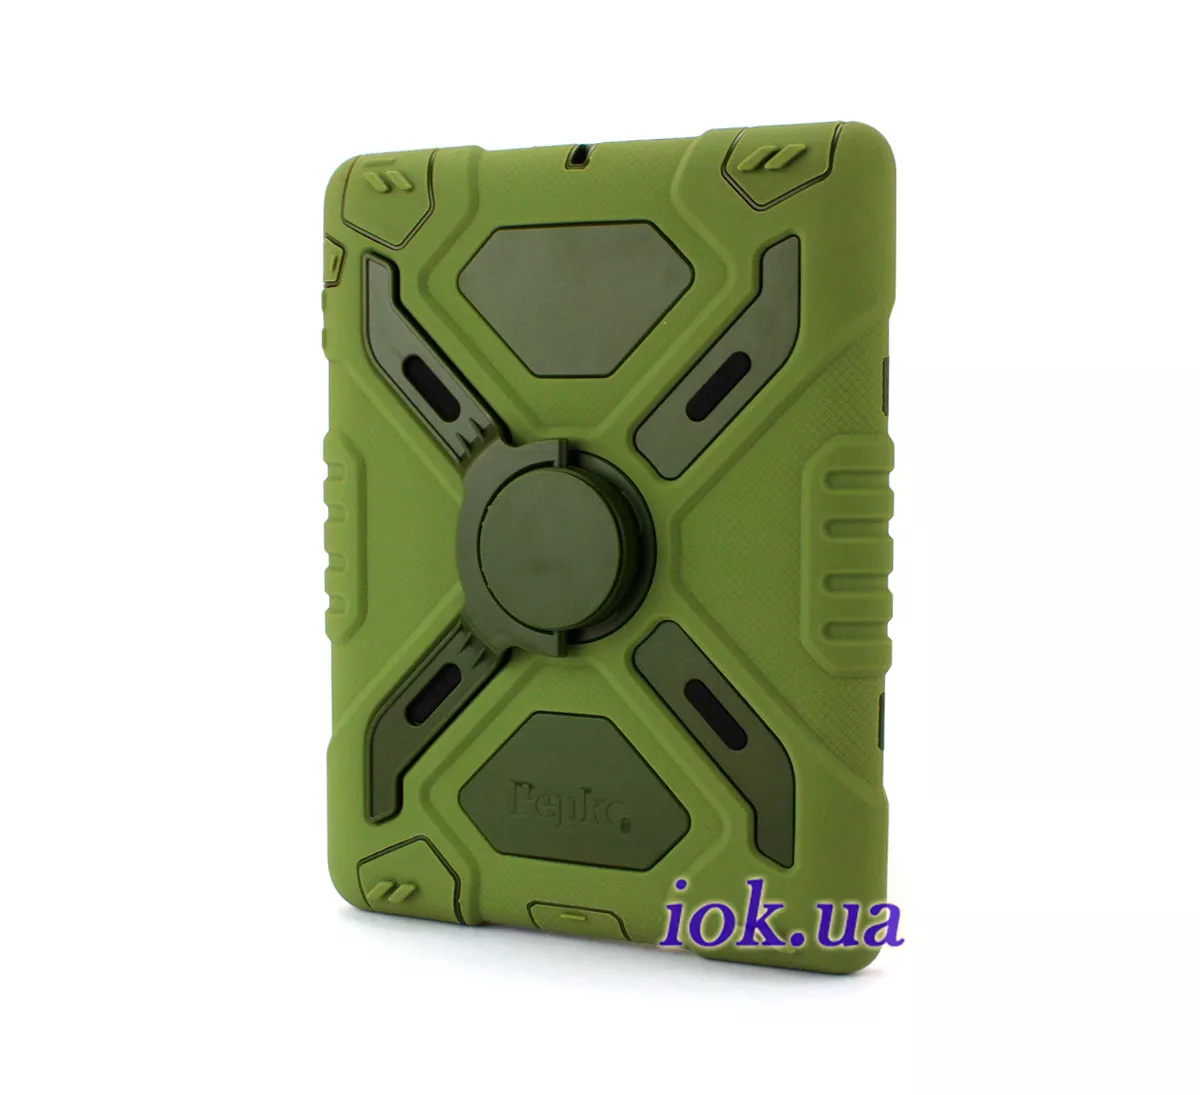 Защитный чехол для iPad 2/3/4 - Pepkoo, зеленый